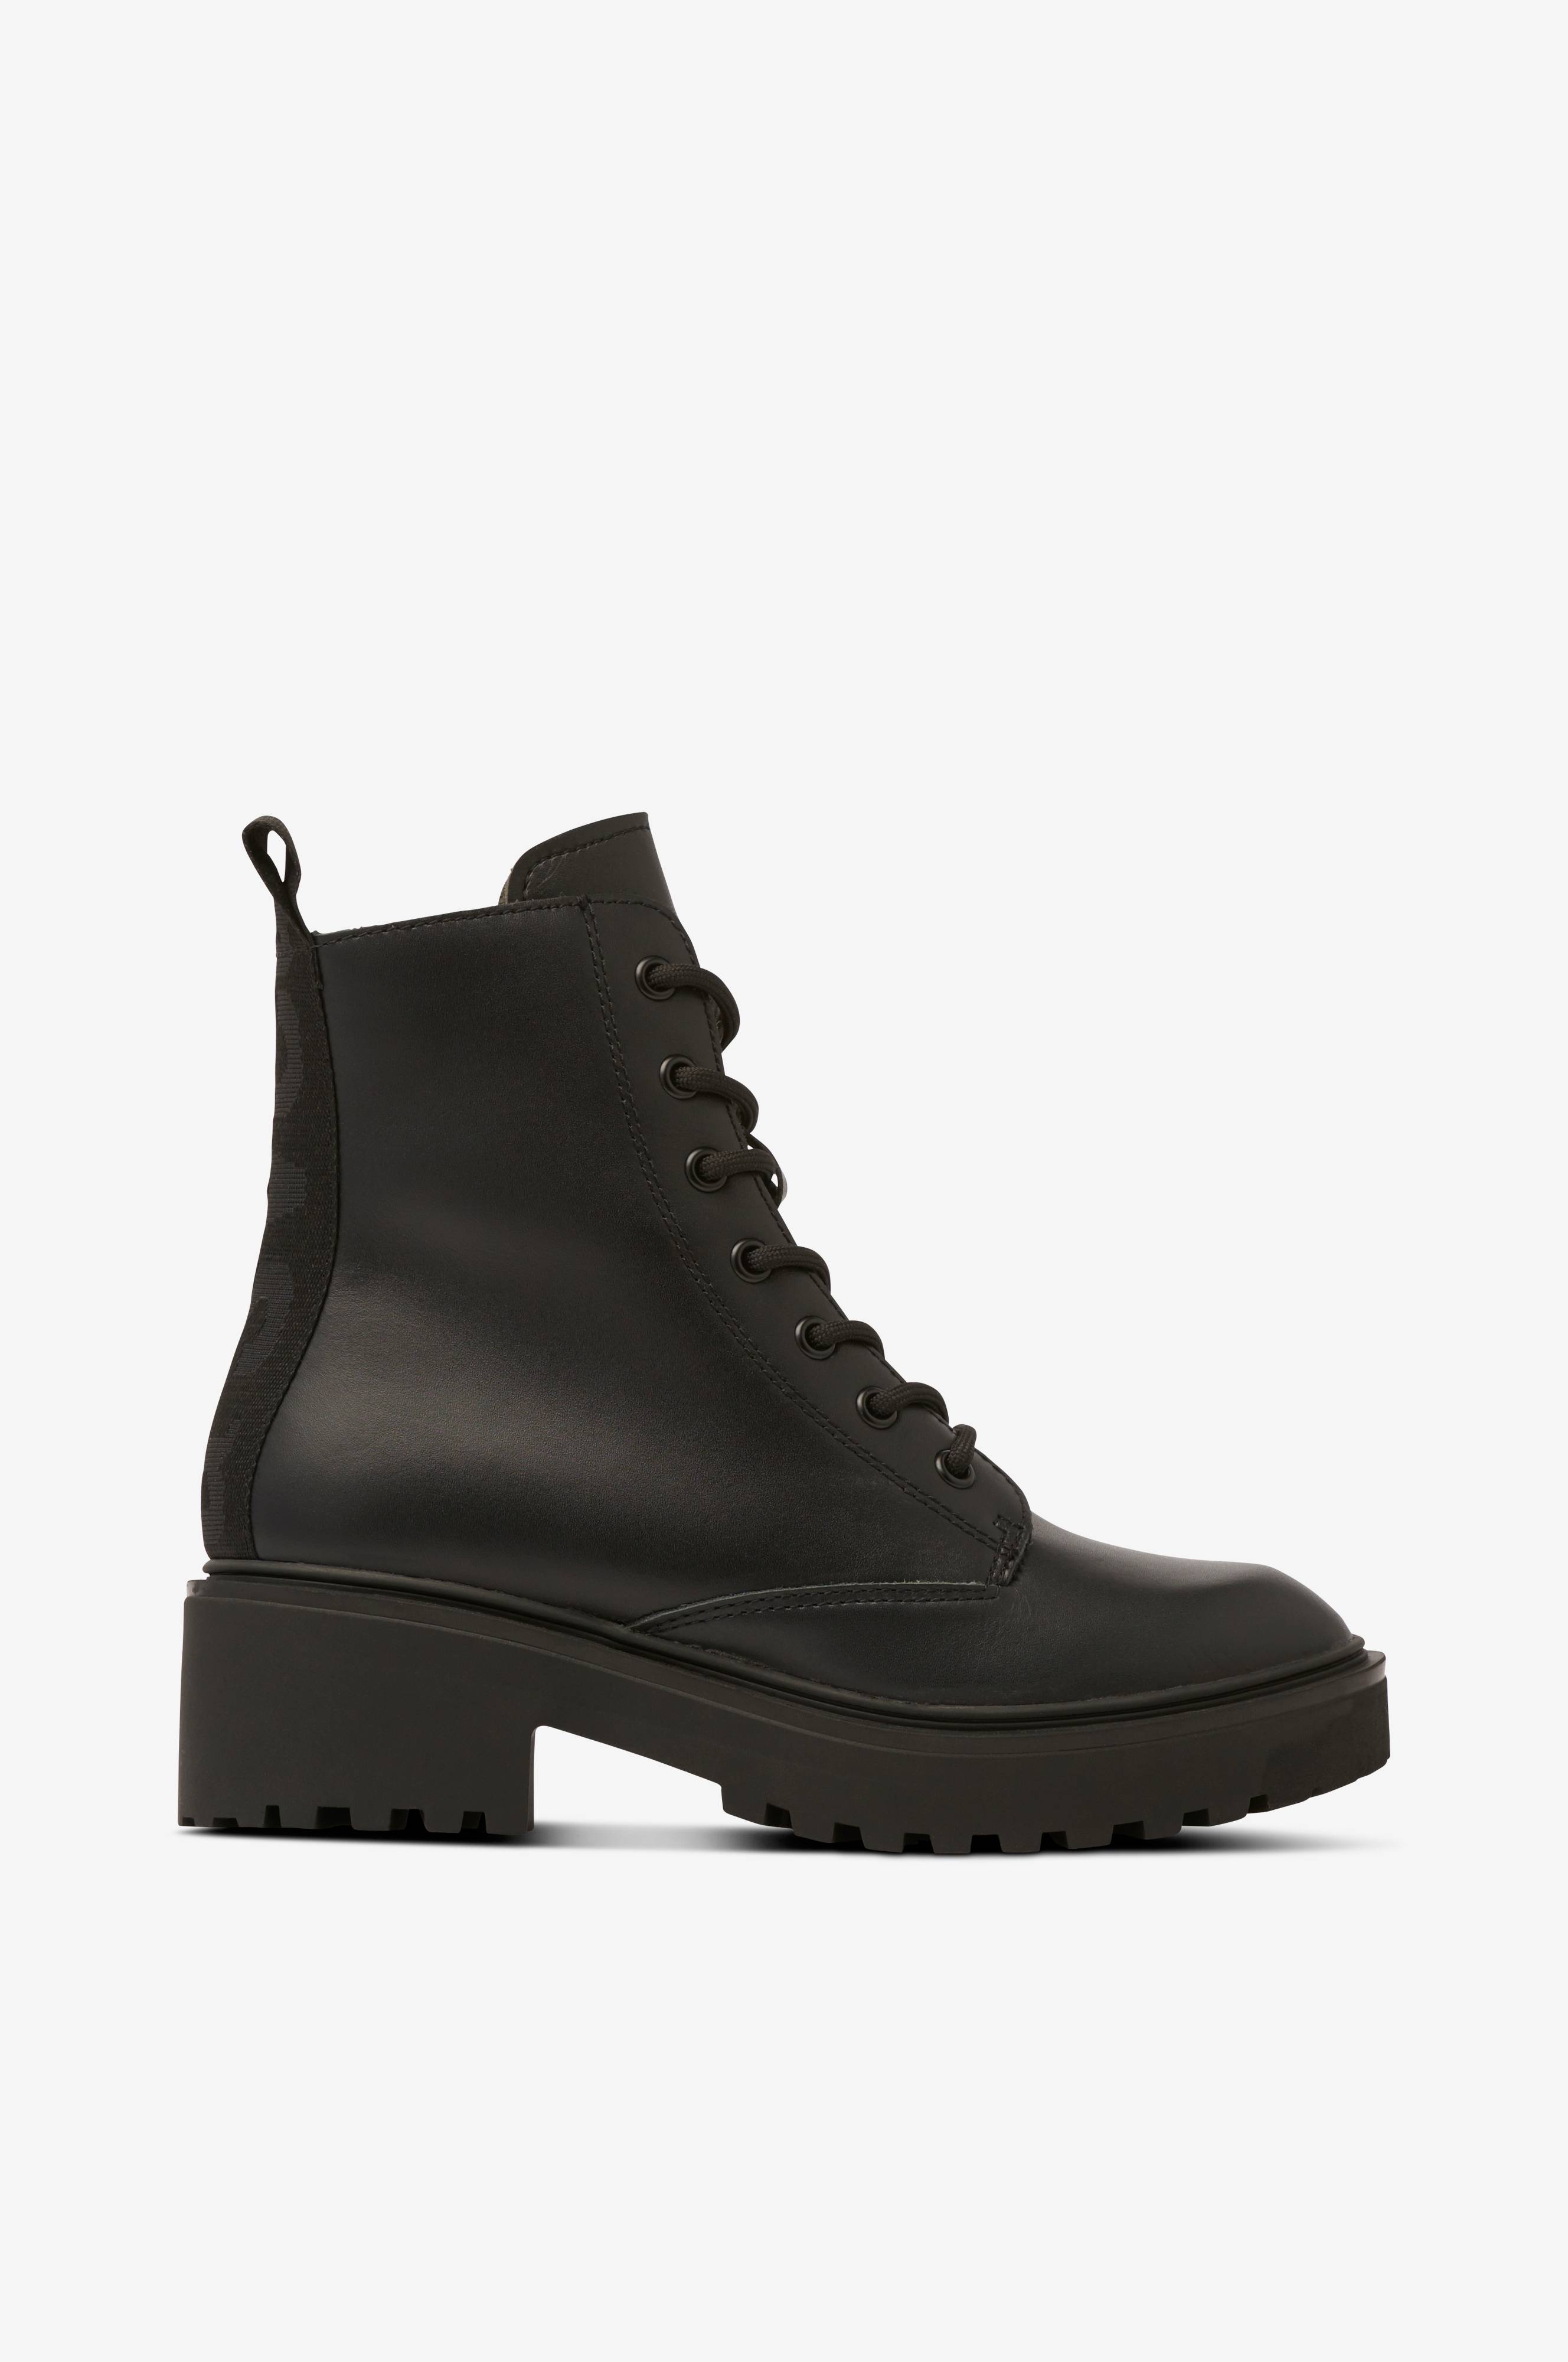 Støvle Leather Boot - Sort Snørestøvler | Ellos.dk